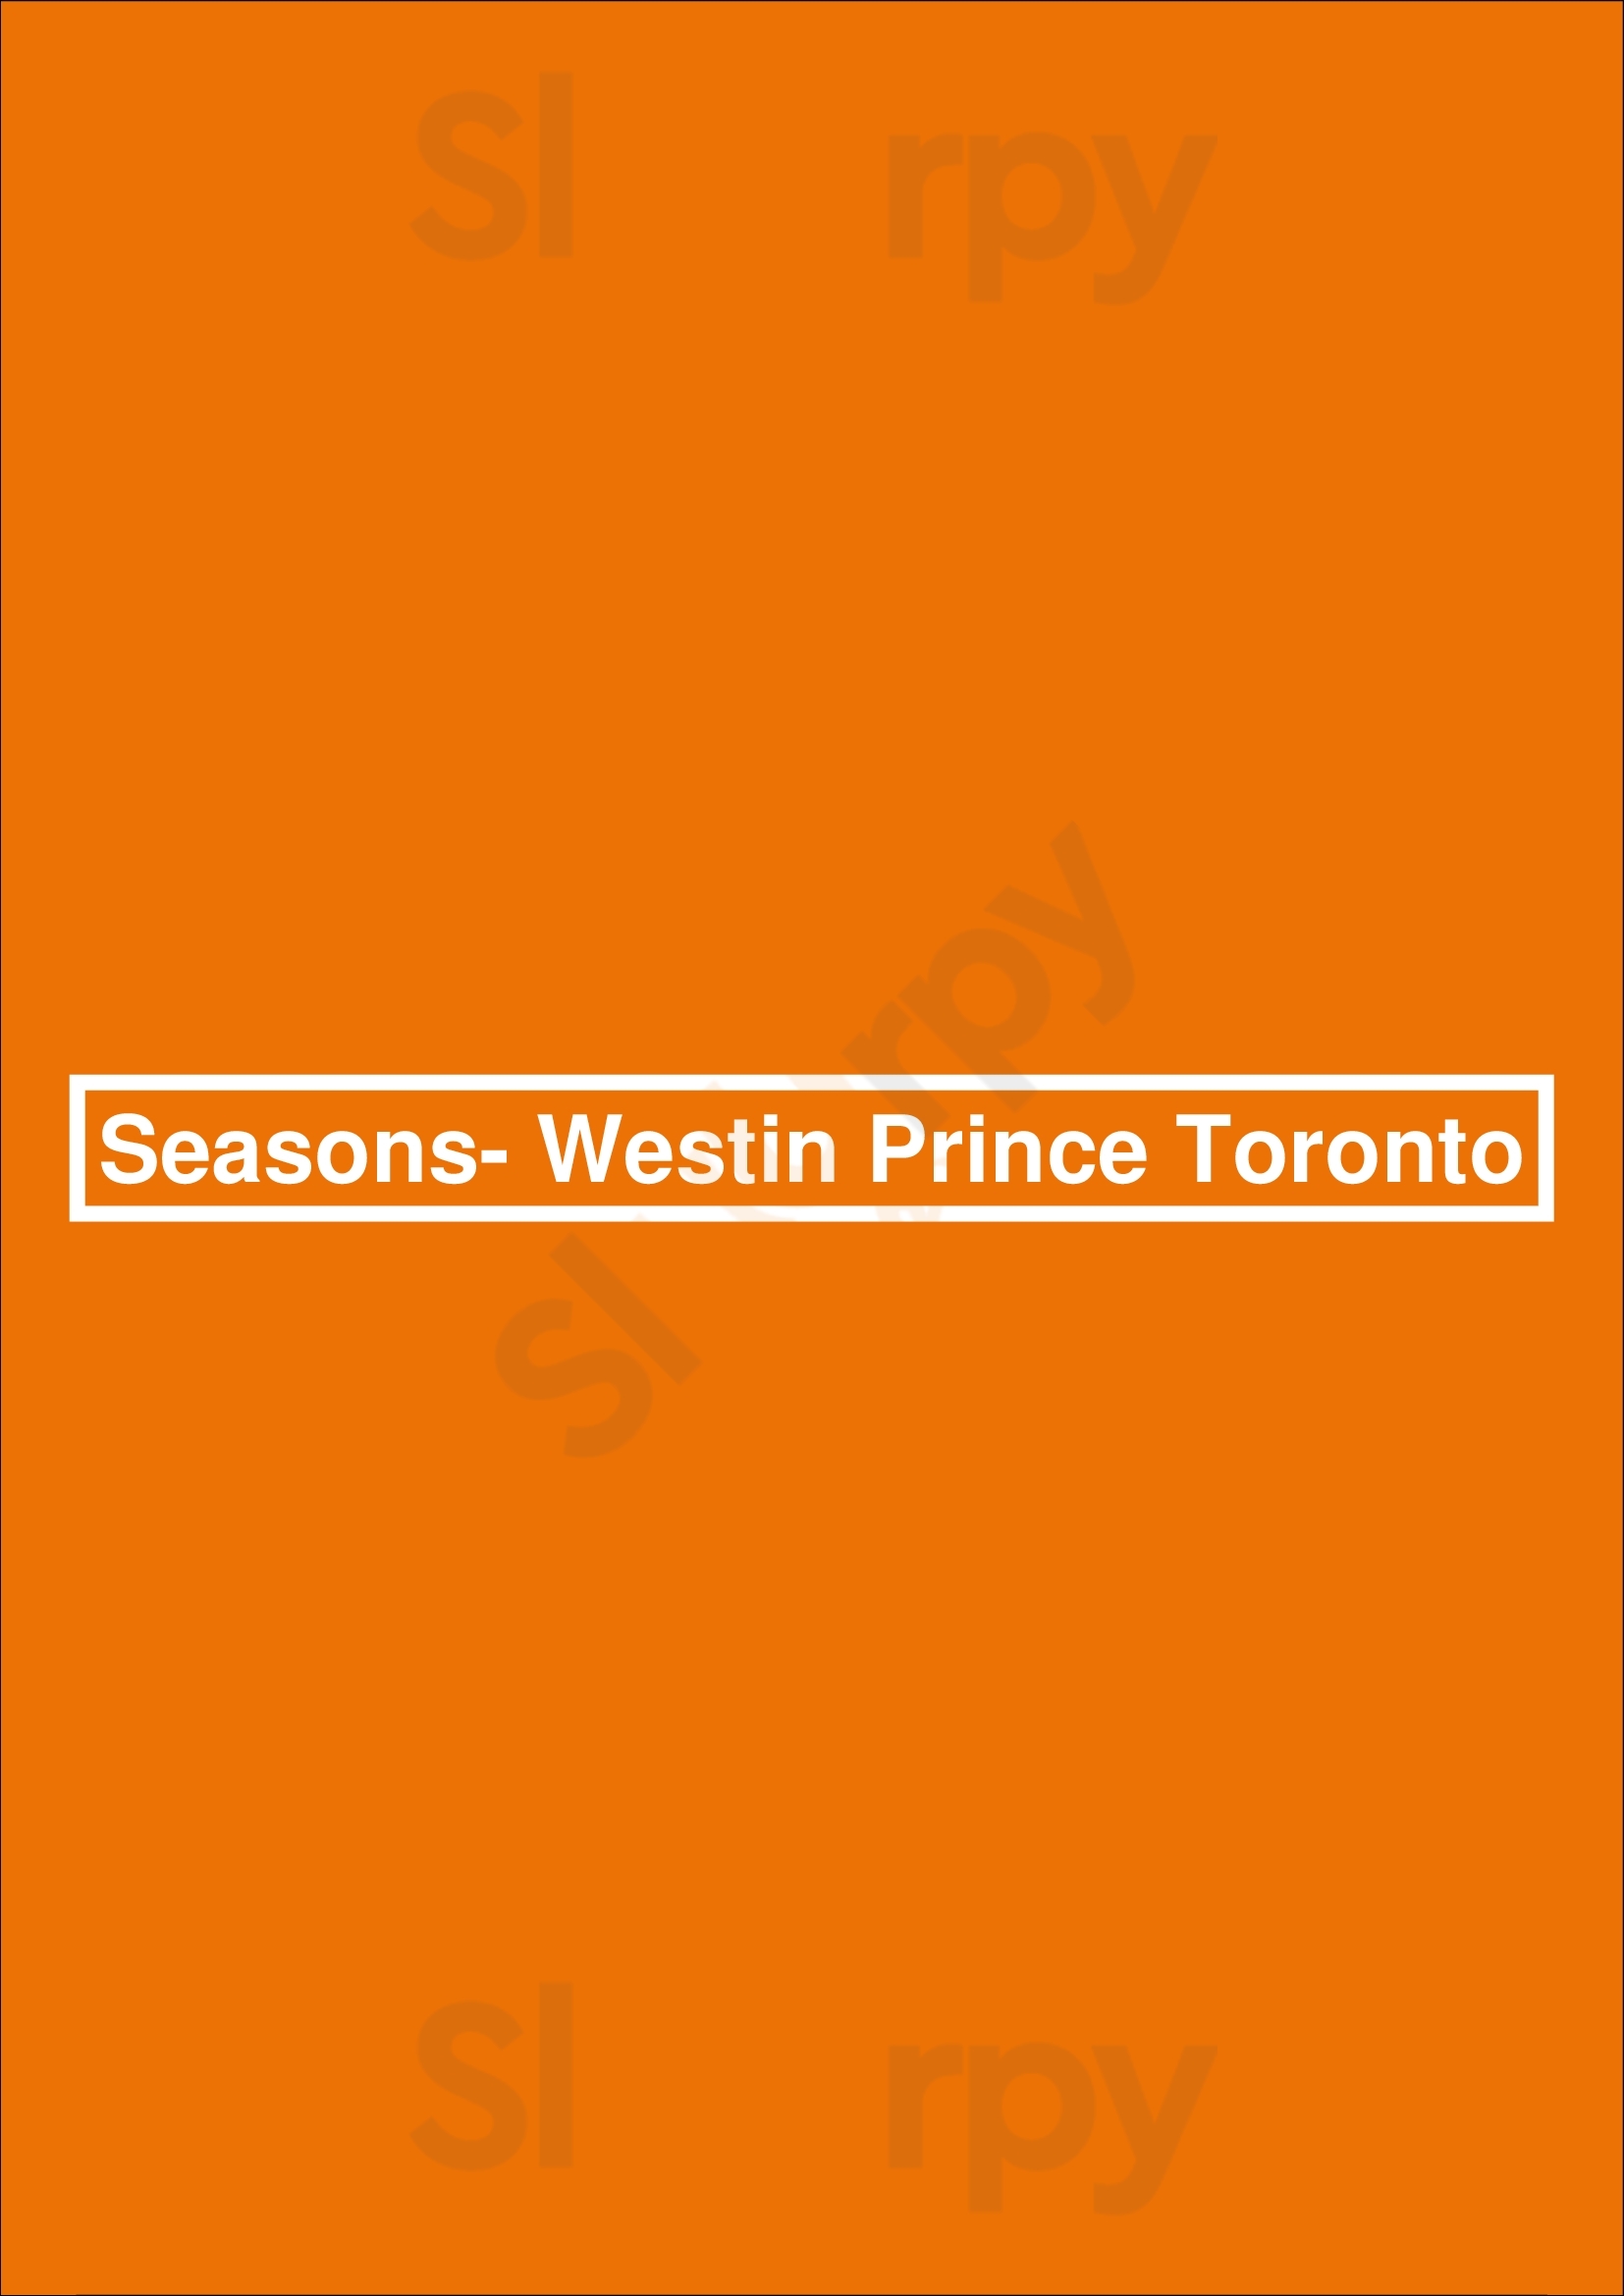 Seasons- Westin Prince Toronto Toronto Menu - 1